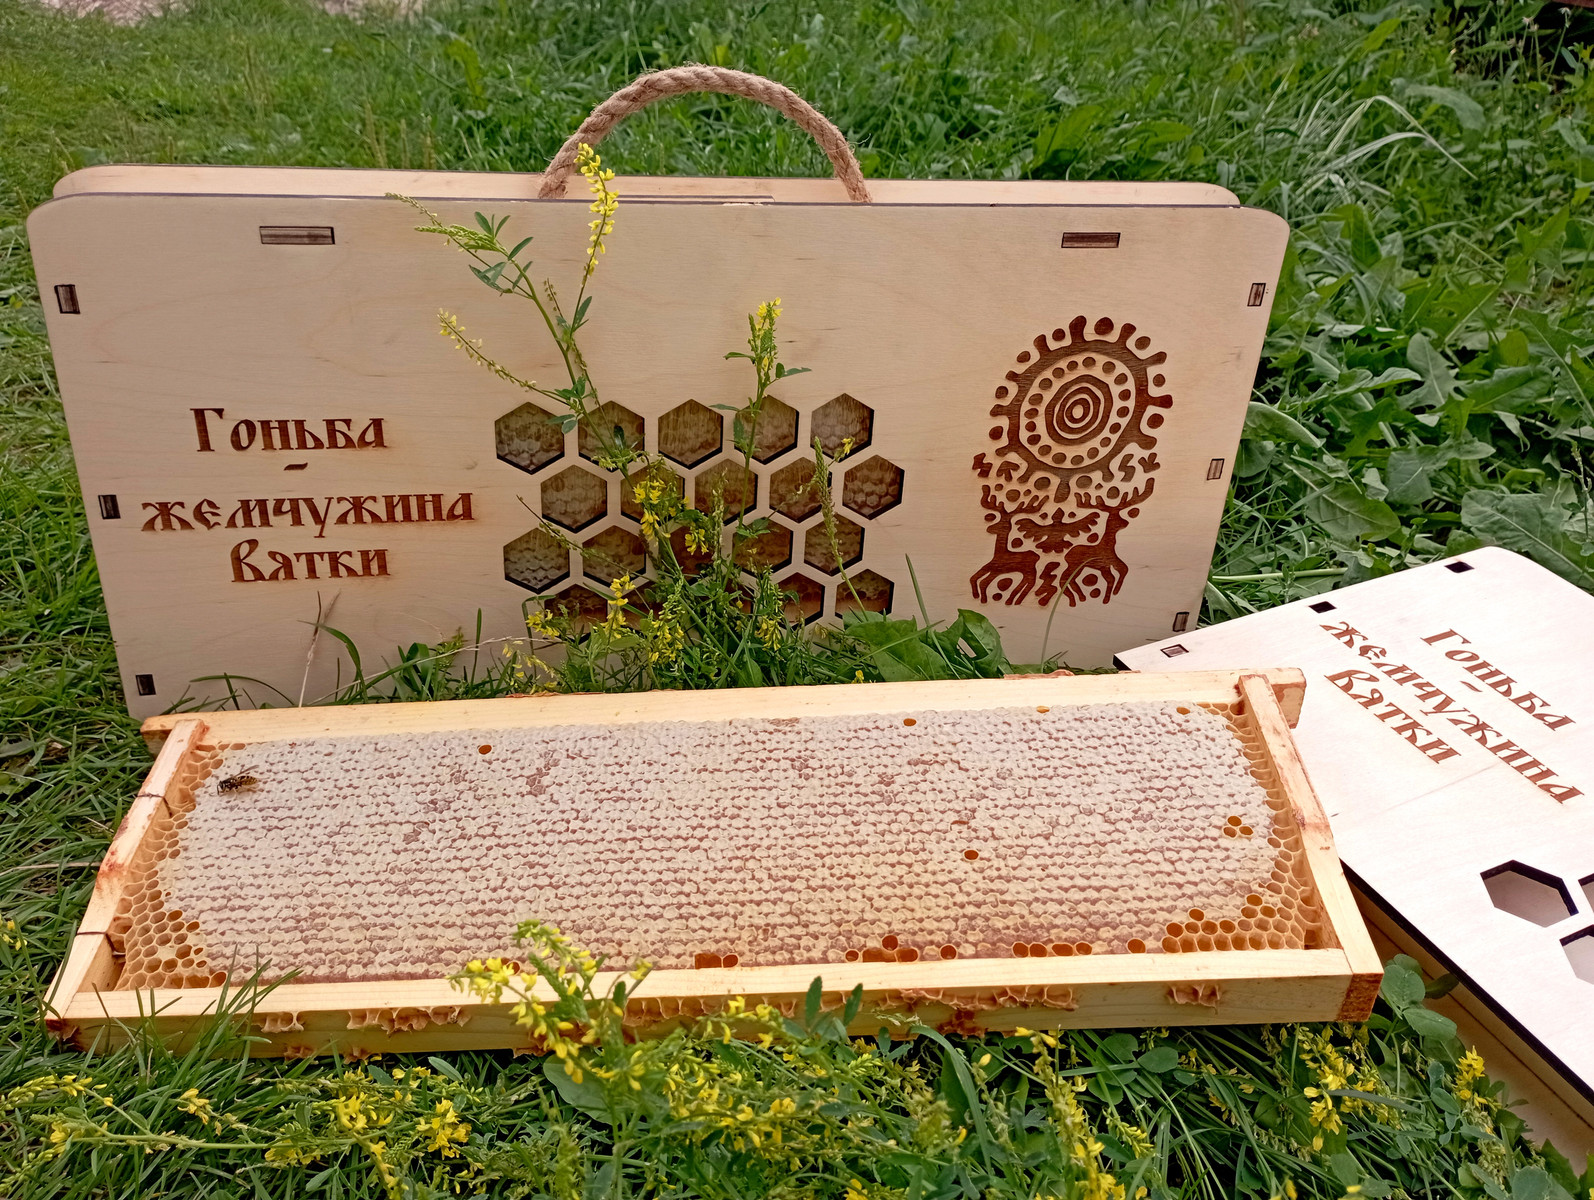 Недавно у проекта появилось собственное производство — мед в сотах, упакованный в аккуратные коробочки